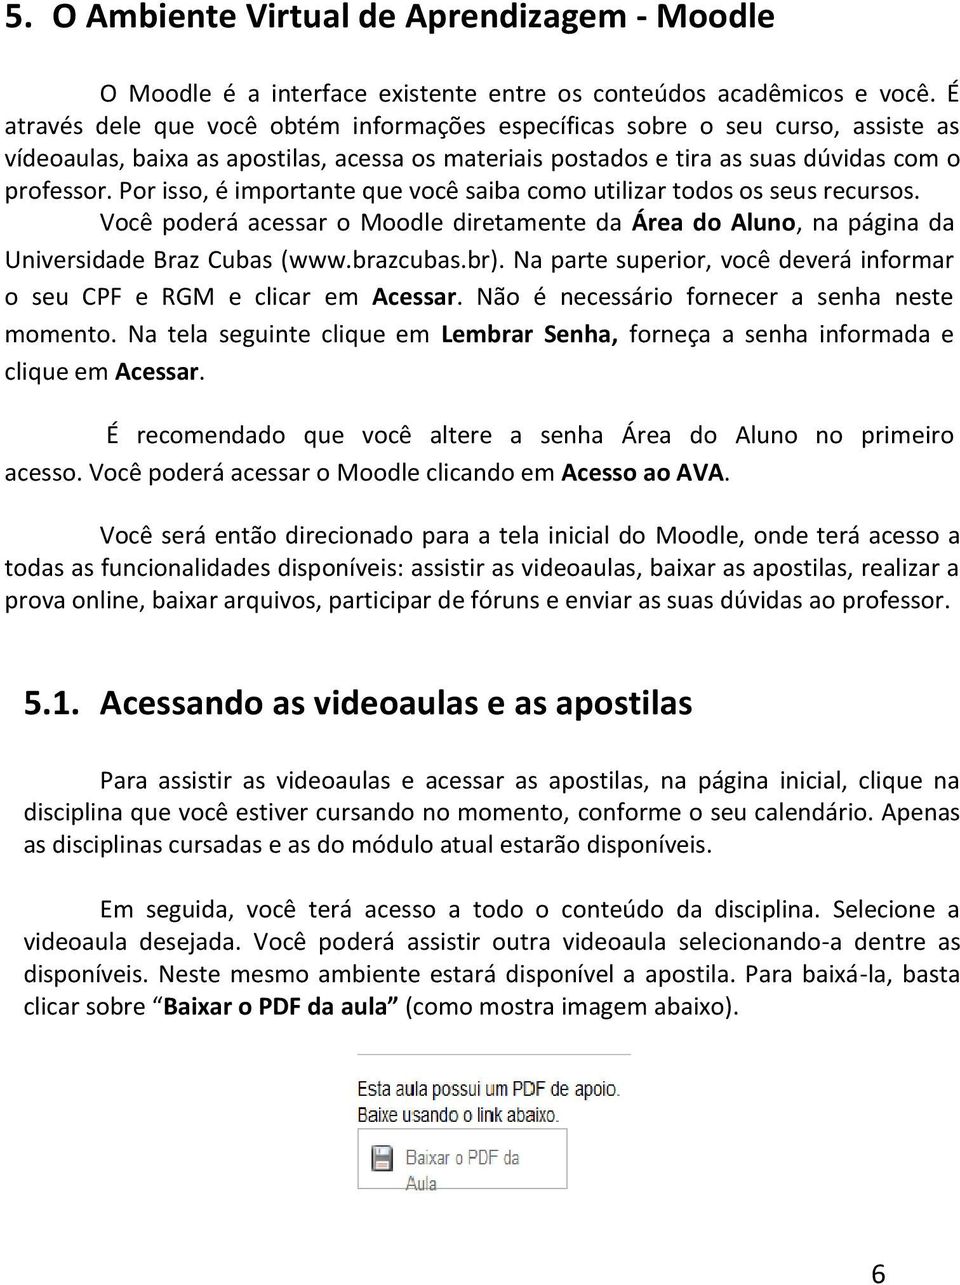 Por isso, é importante que você saiba como utilizar todos os seus recursos. Você poderá acessar o Moodle diretamente da Área do Aluno, na página da Universidade Braz Cubas (www.brazcubas.br).